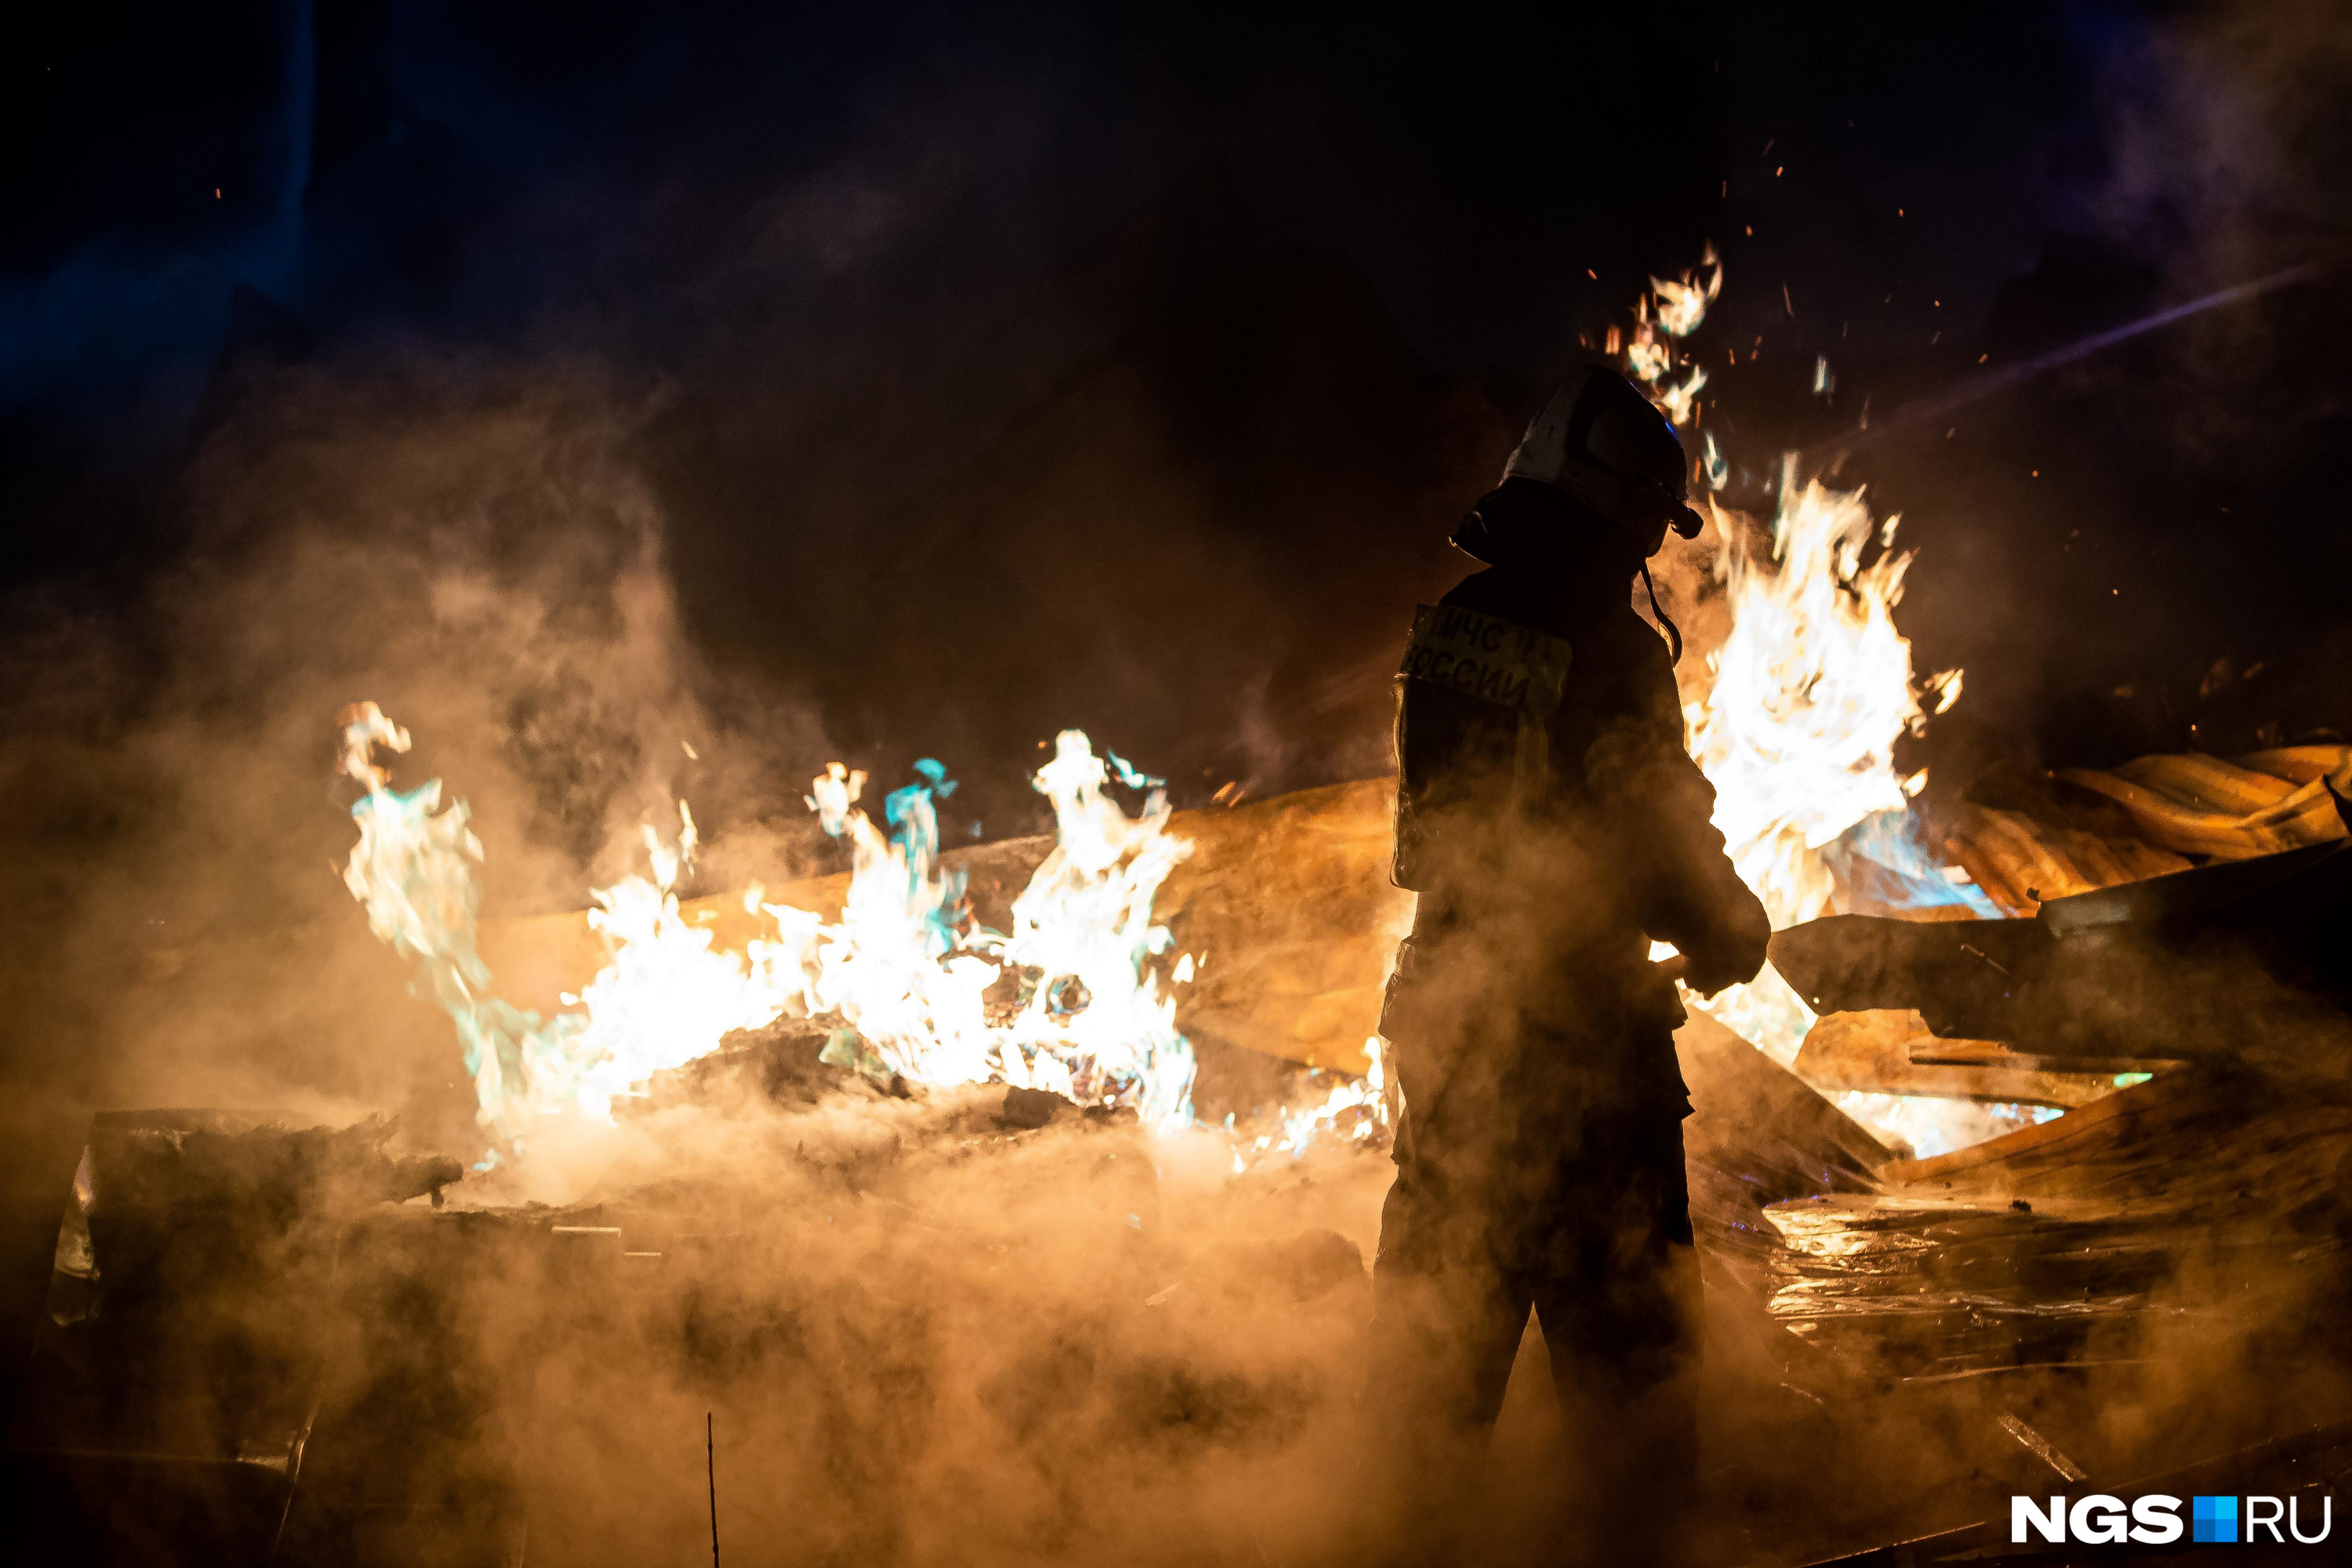 Пожарные 15 раз выезжали на тушение пожаров в новогоднюю ночь в Забайкалье